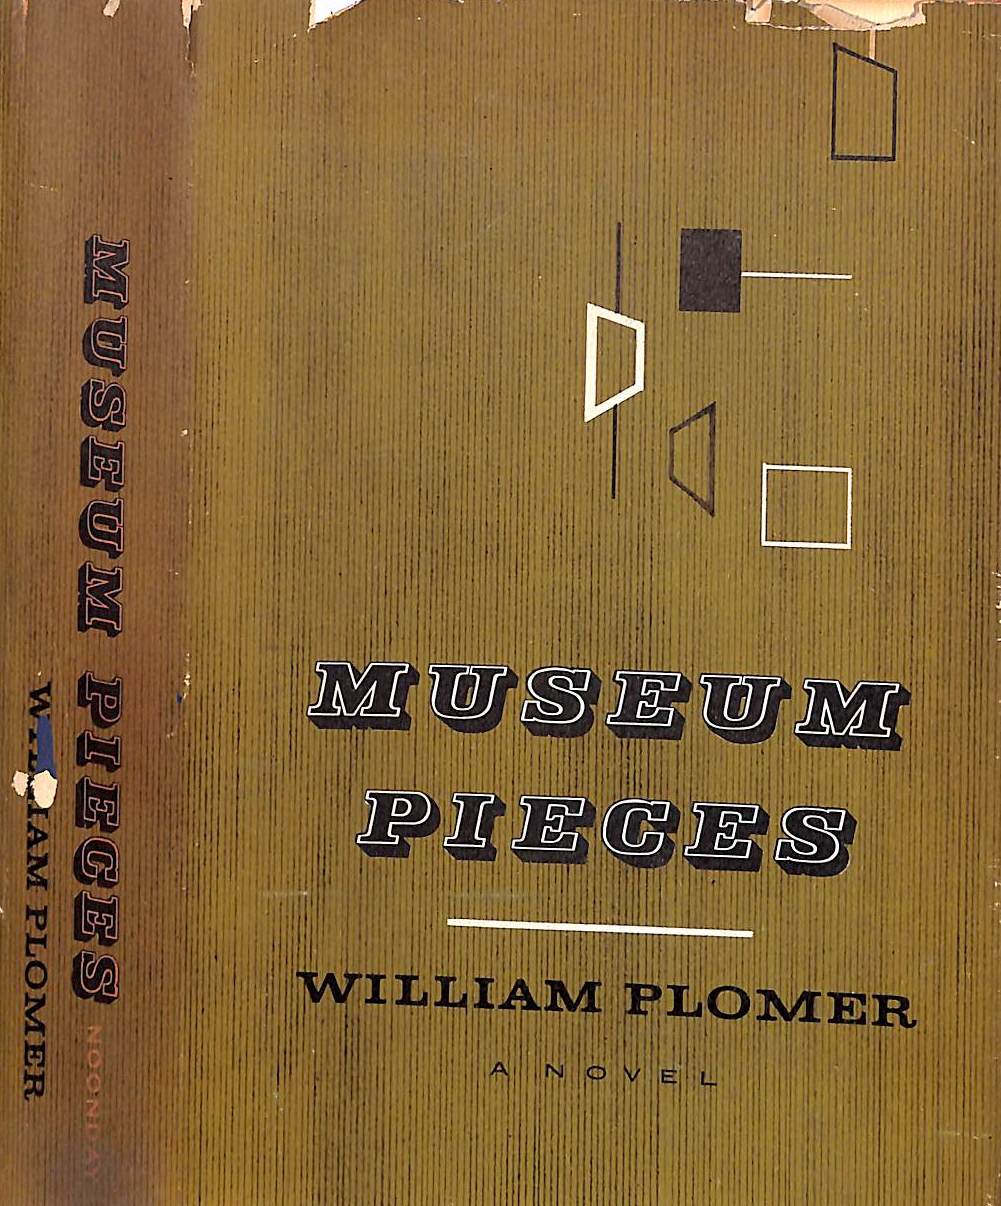 "Museum Pieces" 1954 PLOMER, William